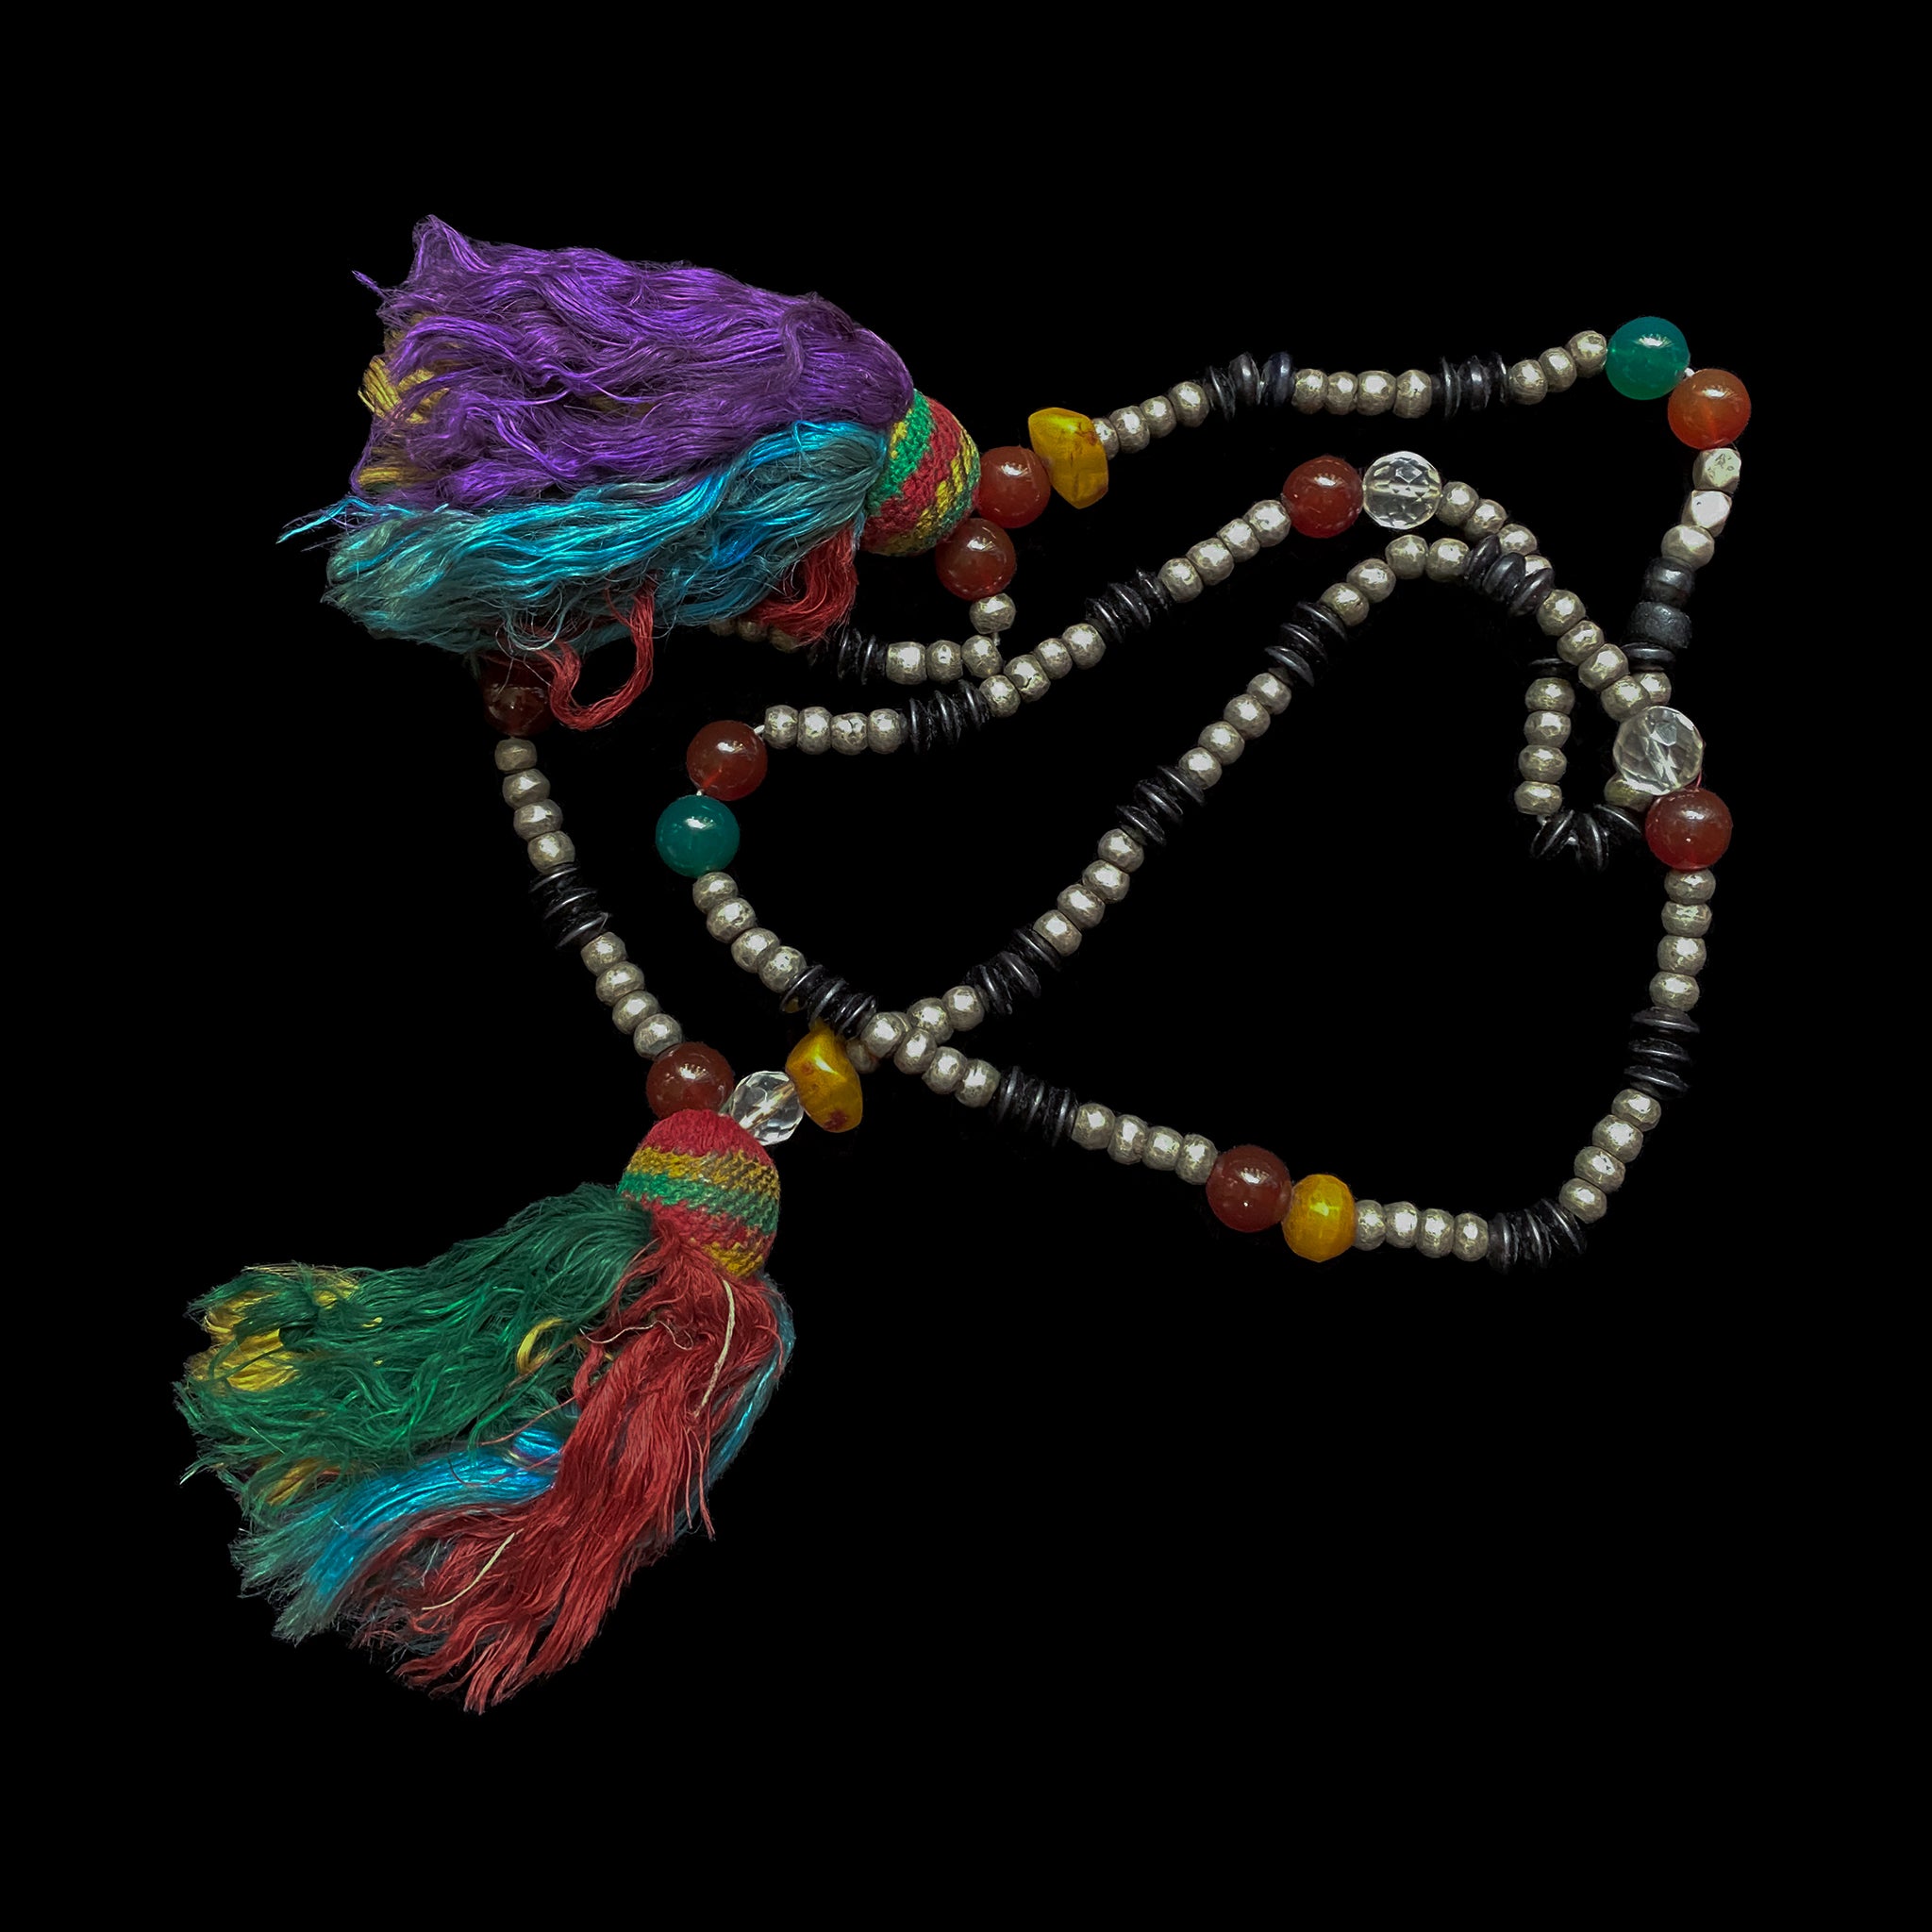 Old Saharan ‘Tasbih’ necklace from Mauritania